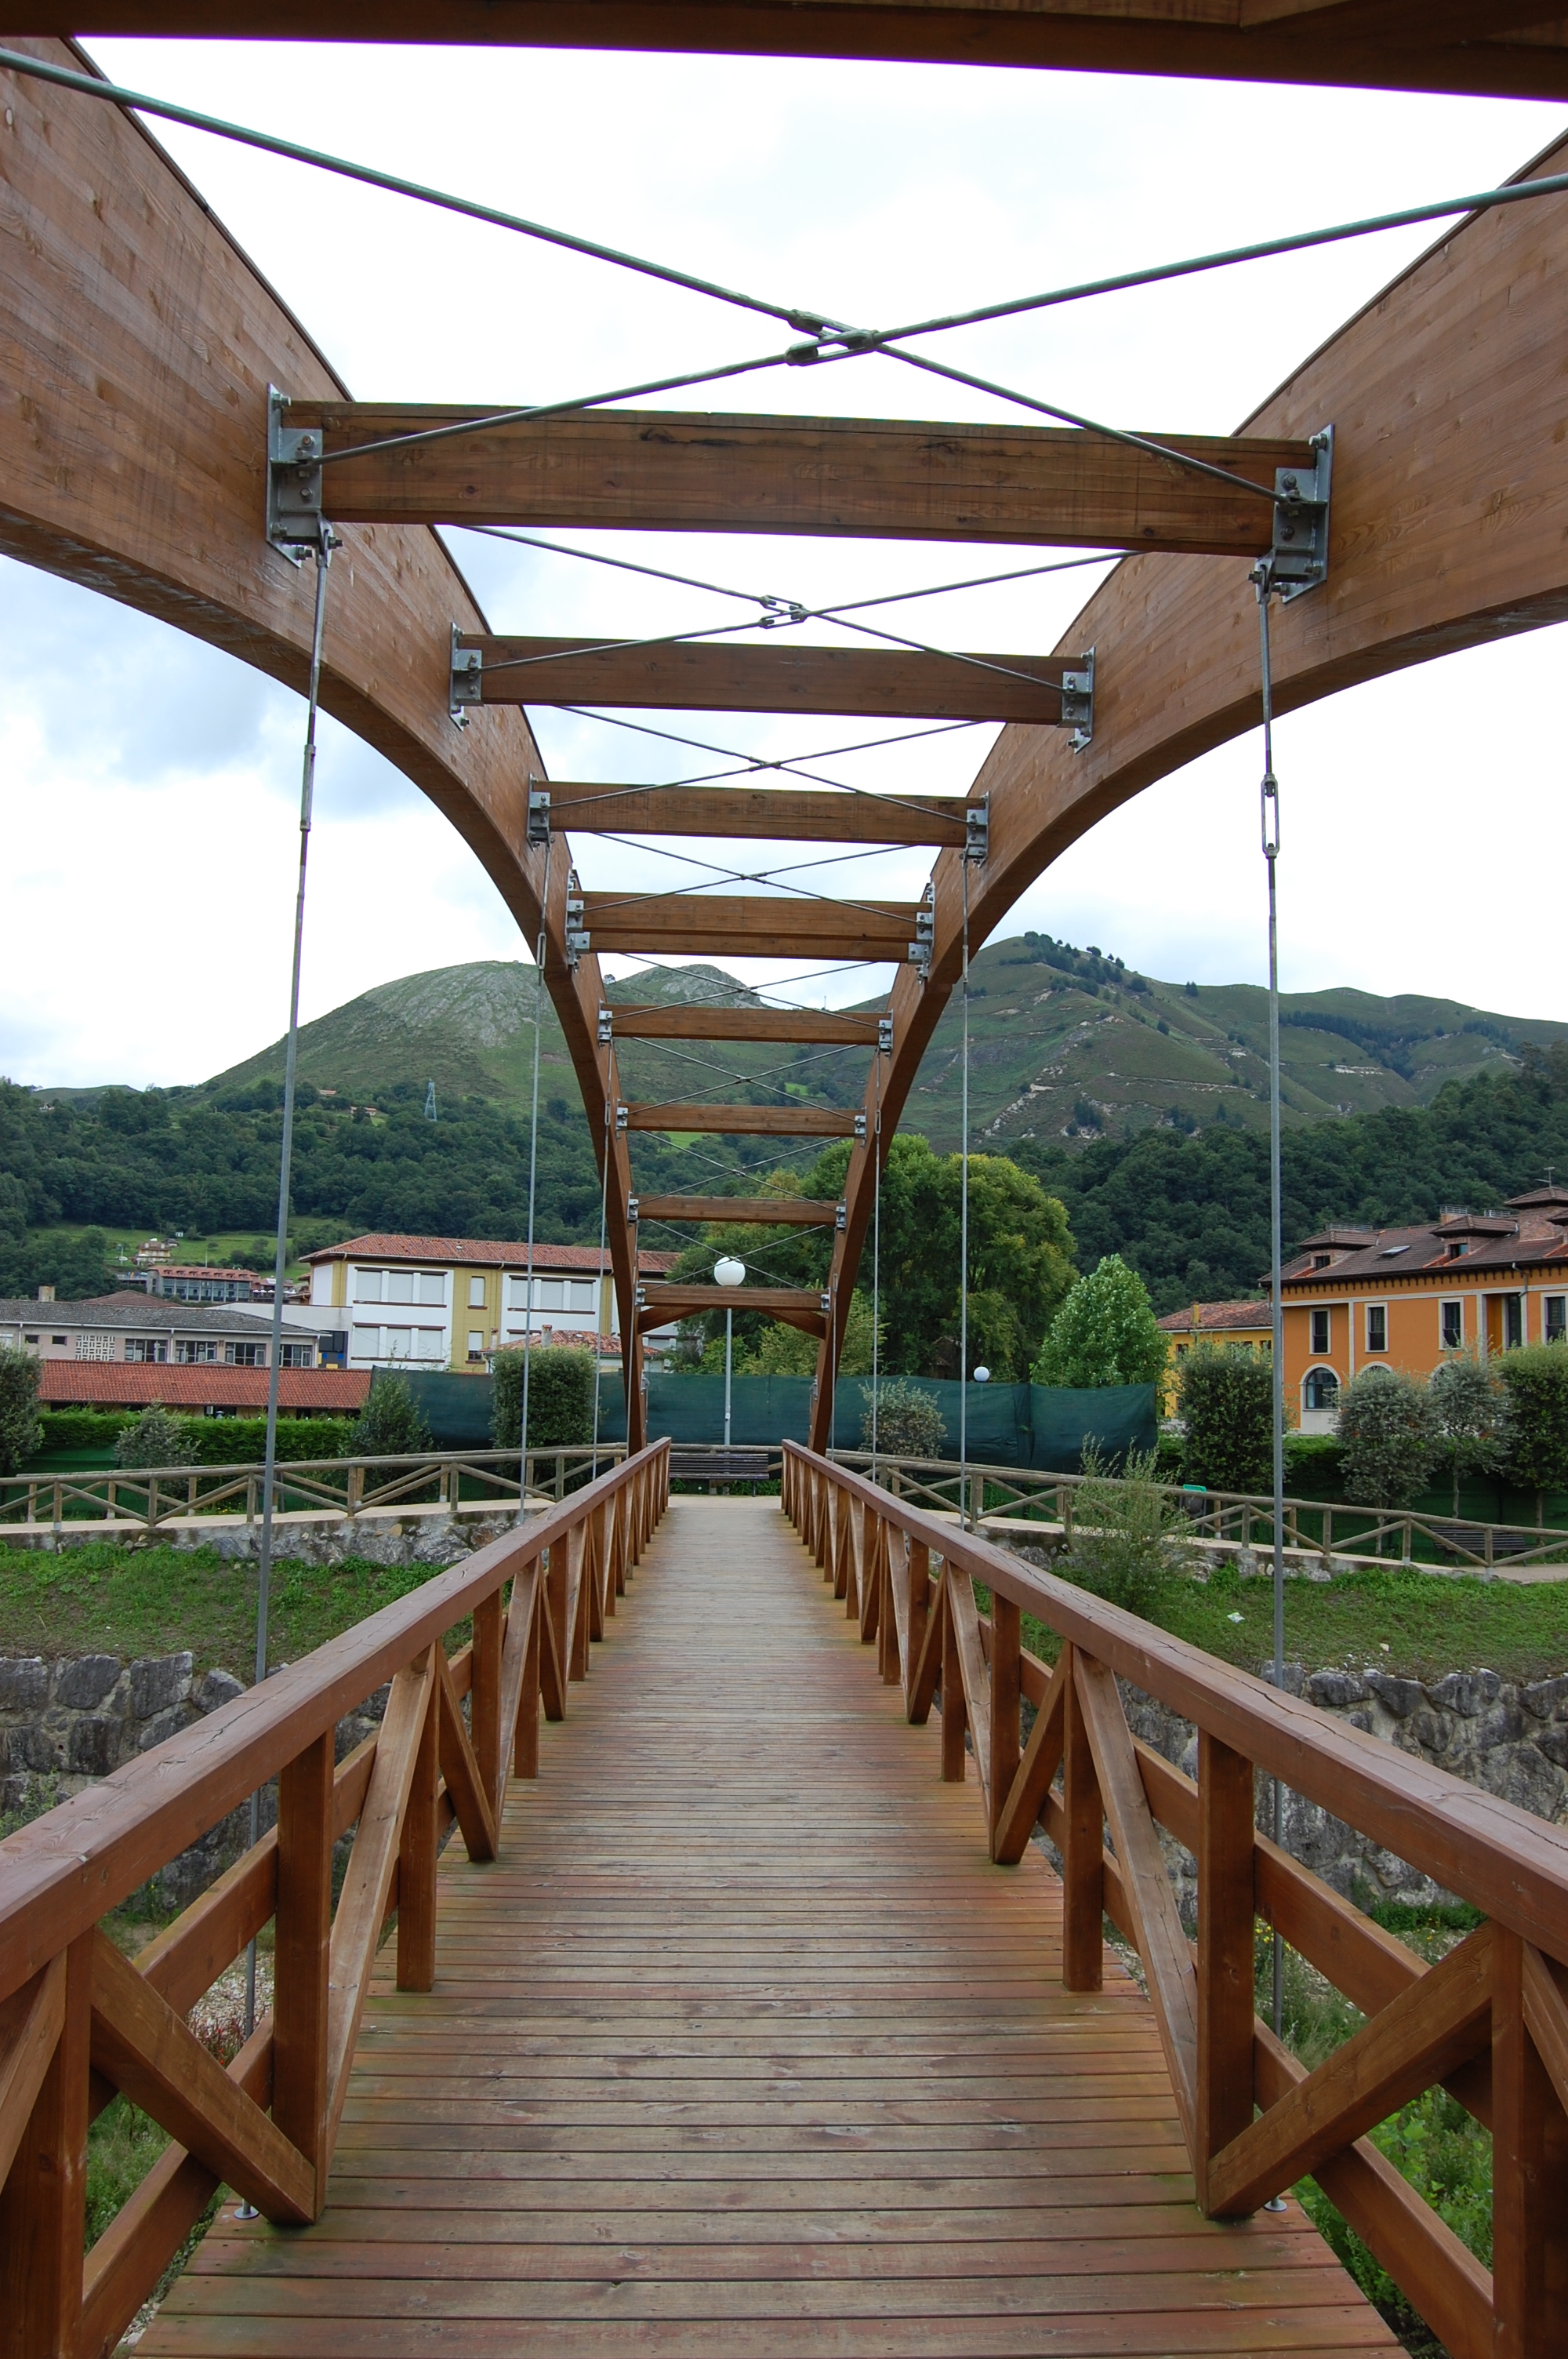 Foto de detalle de puente colgante de madera de Cangas de Onís.